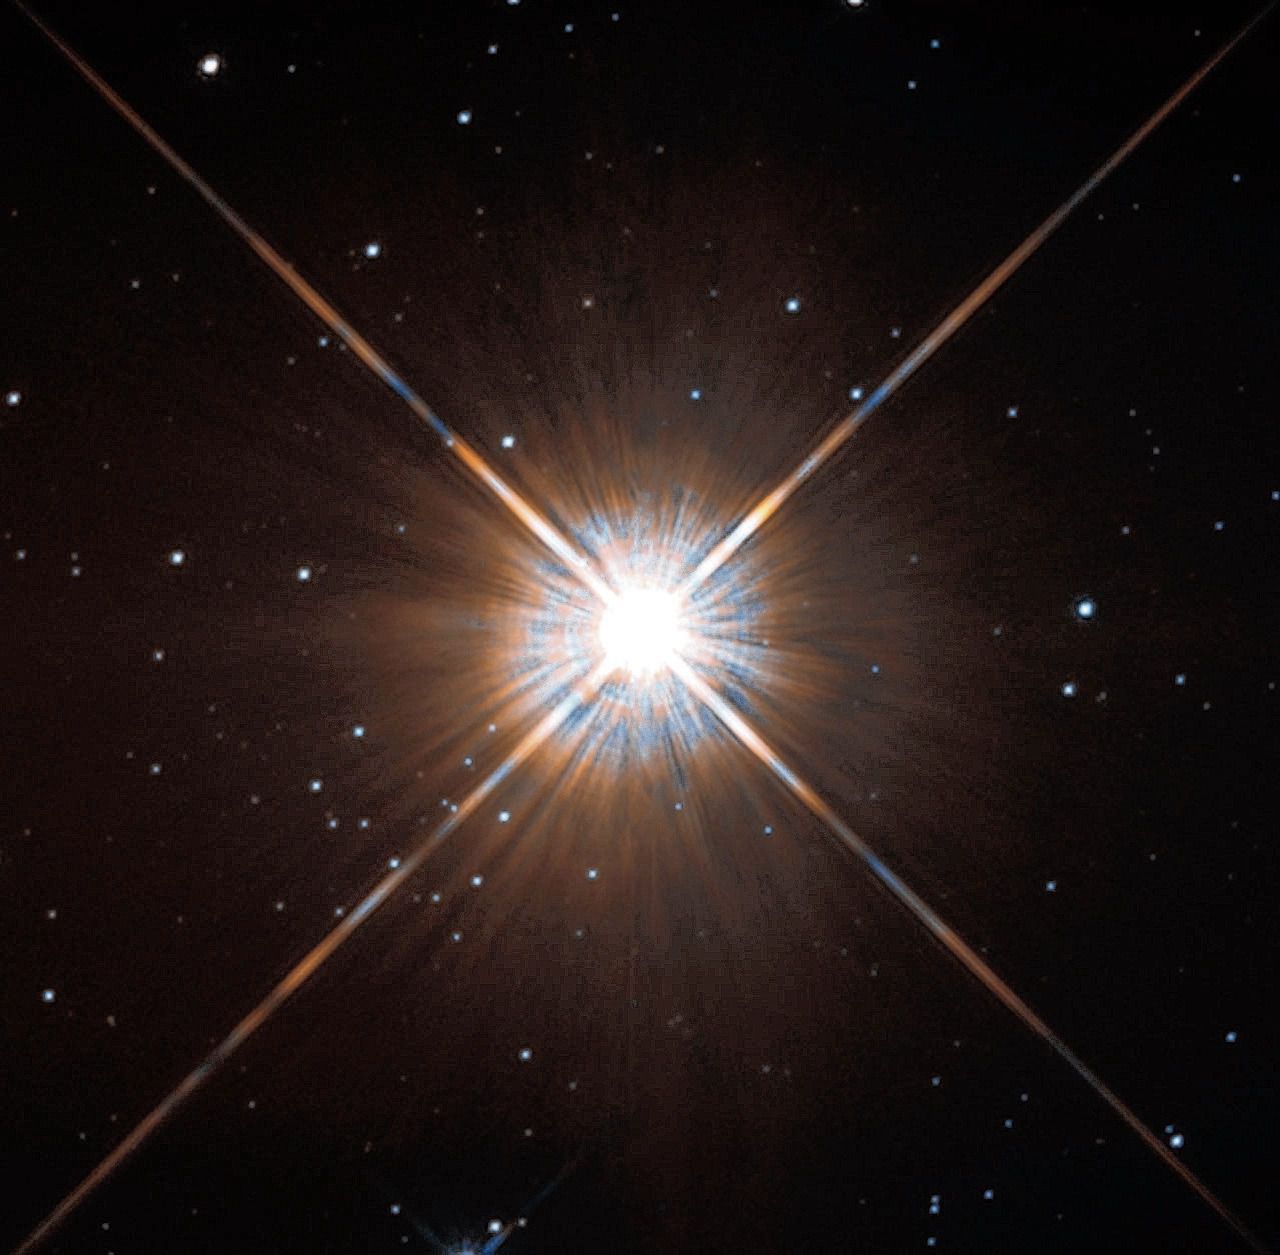 Proxima Centauri, de rode dwergster die op 4,2 lichtjaar afstand van de aarde staat.